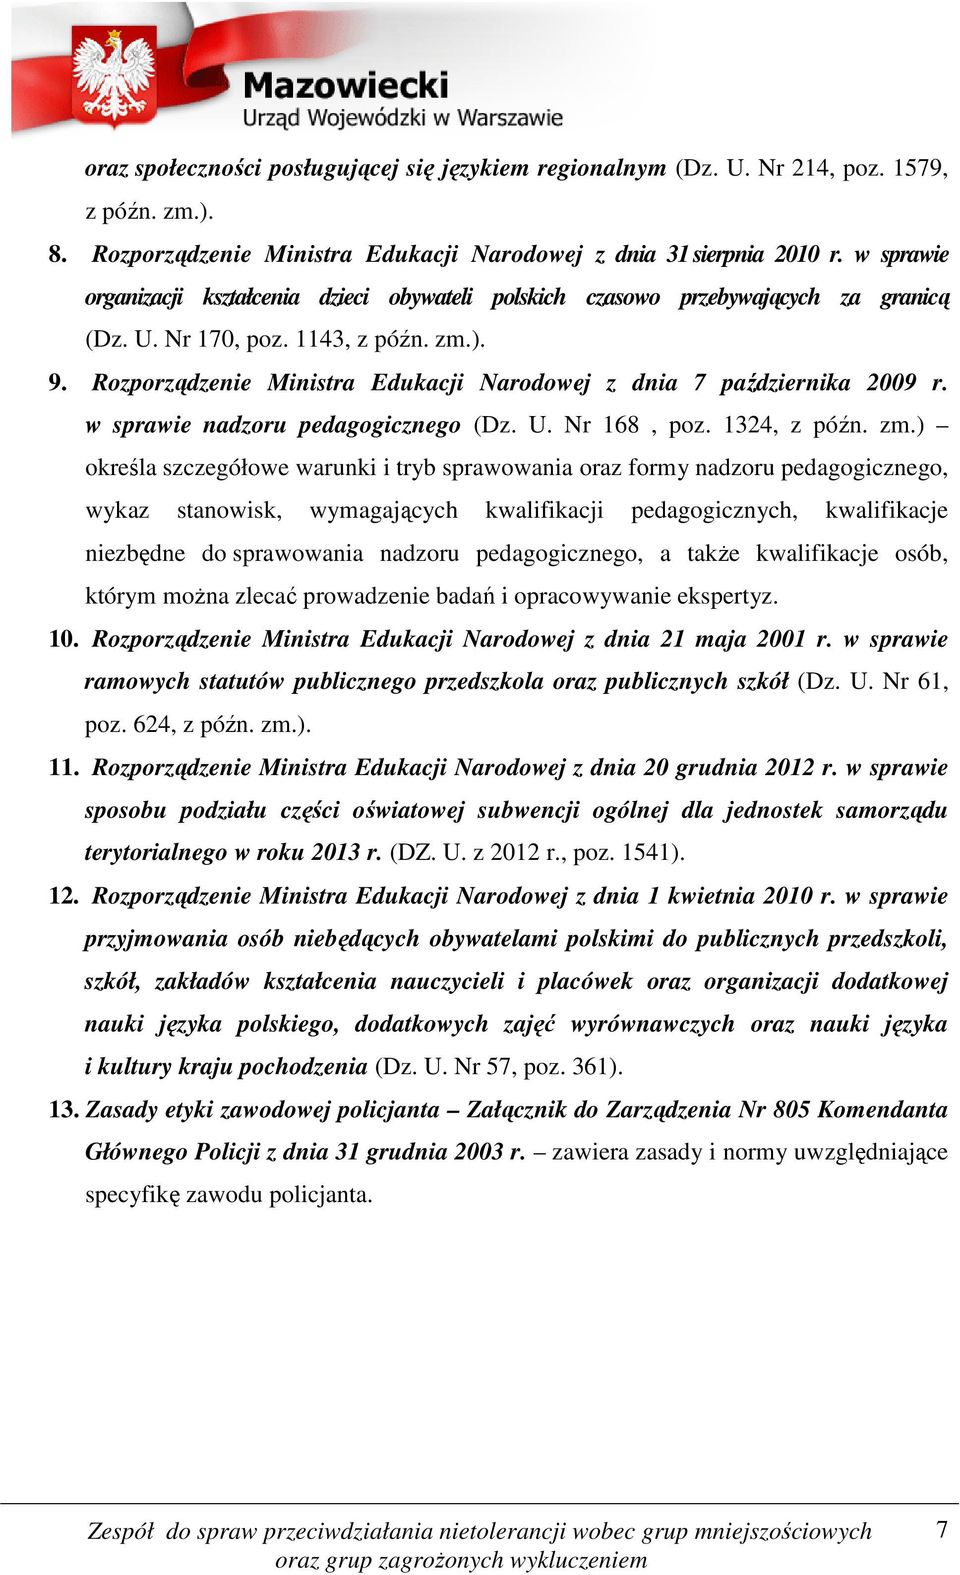 Rozporządzenie Ministra Edukacji Narodowej z dnia 7 października 2009 r. w sprawie nadzoru pedagogicznego (Dz. U. Nr 168, poz. 1324, z późn. zm.